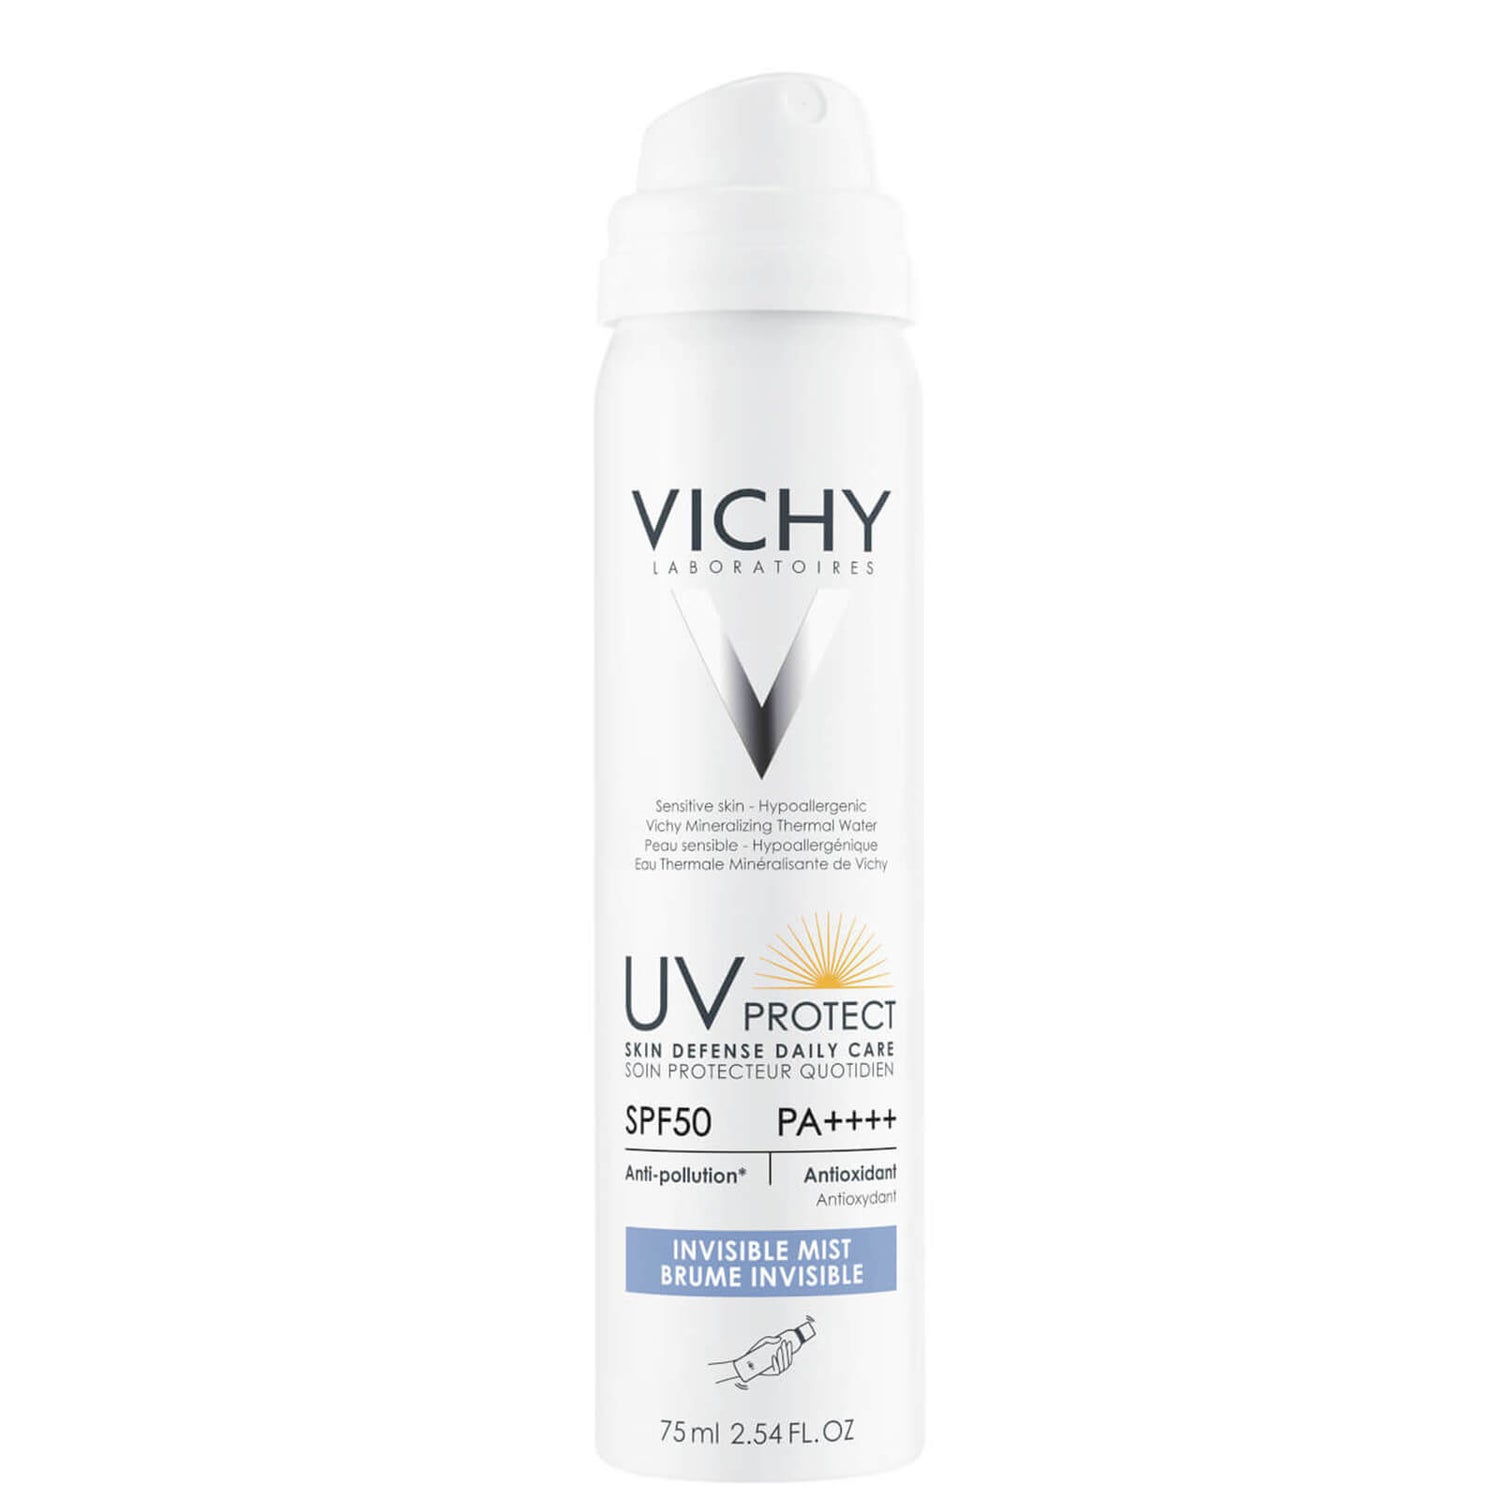 VICHY UV Protect Cuidado diario de la piel niebla invisible 75ml